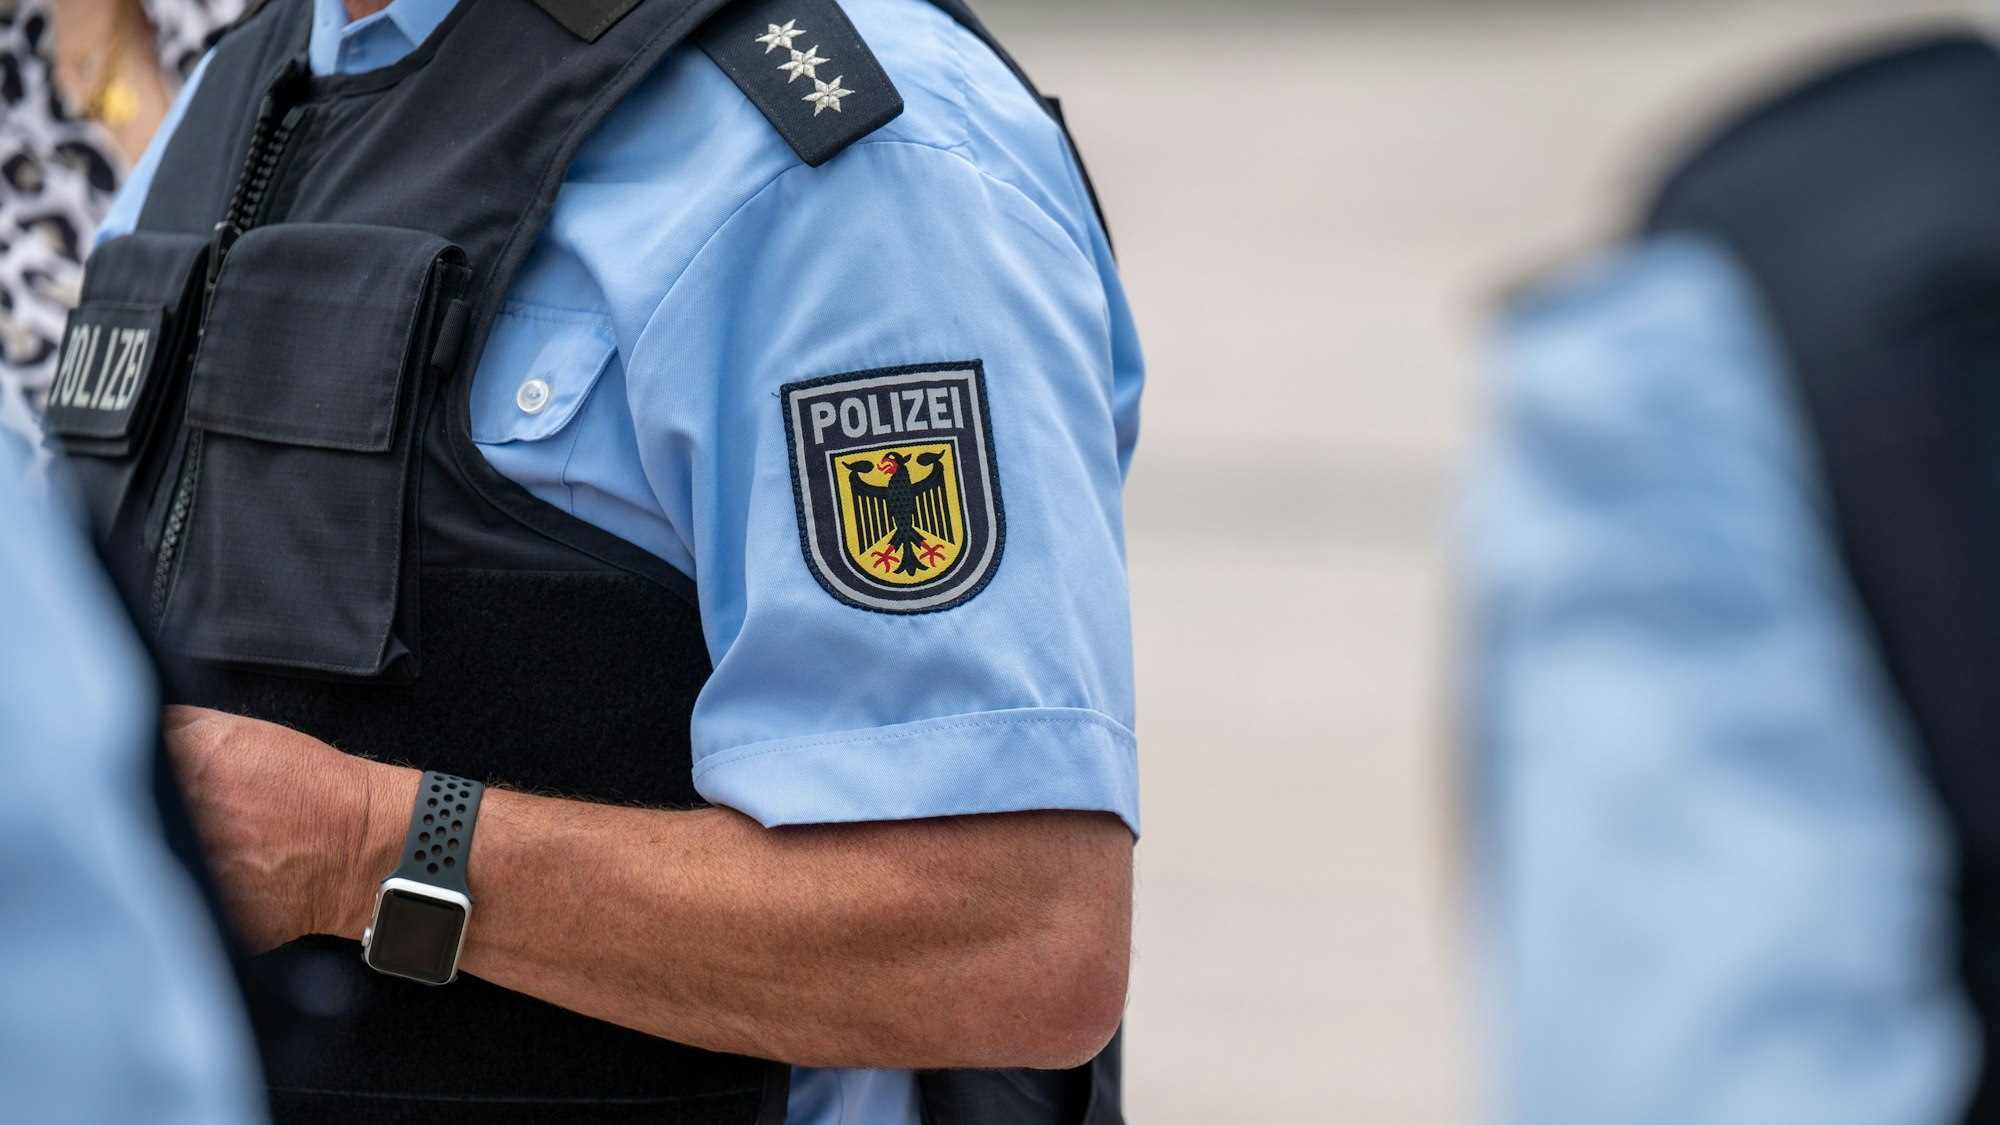 Das Emblem der Bundespolizei ist auf der Uniform eines Bundespolizisten zu sehen.